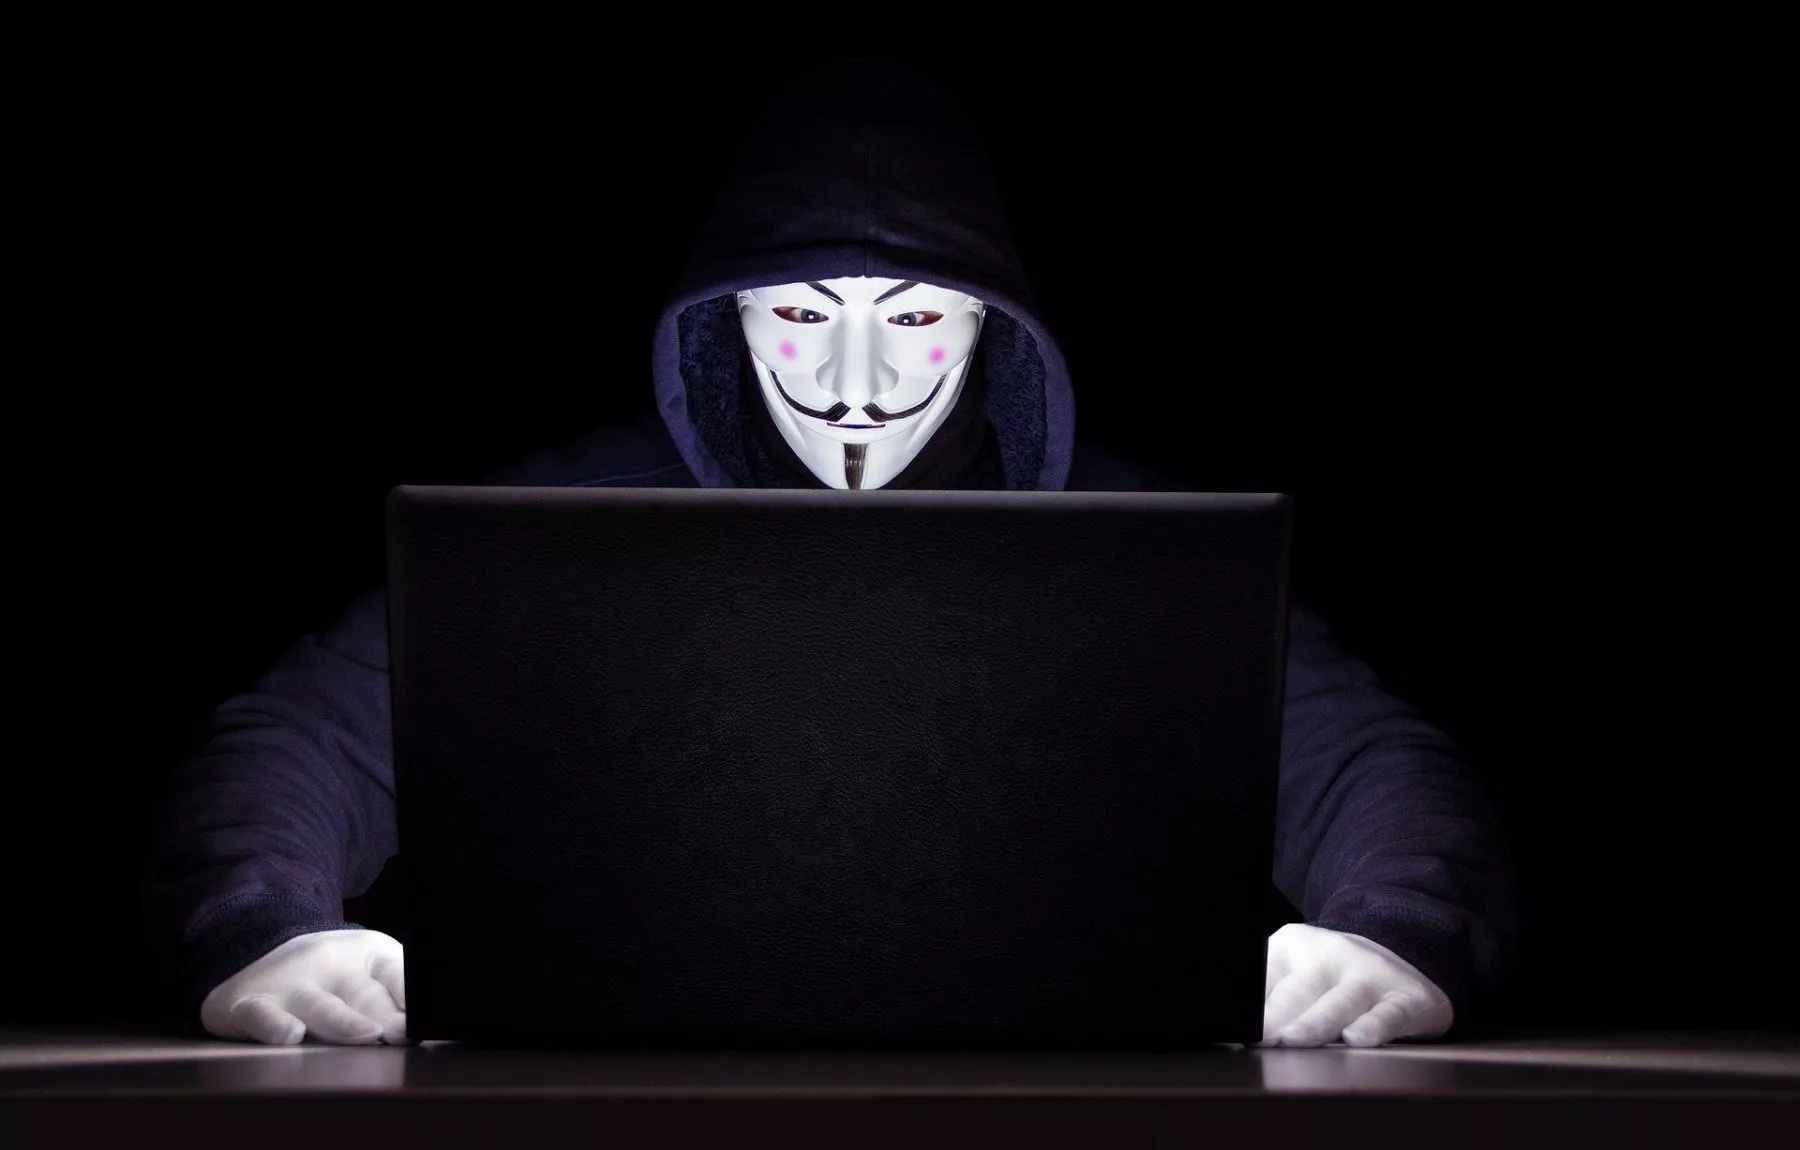 Anonymous hackt Russische tv zenders om oorlog uit te zenden